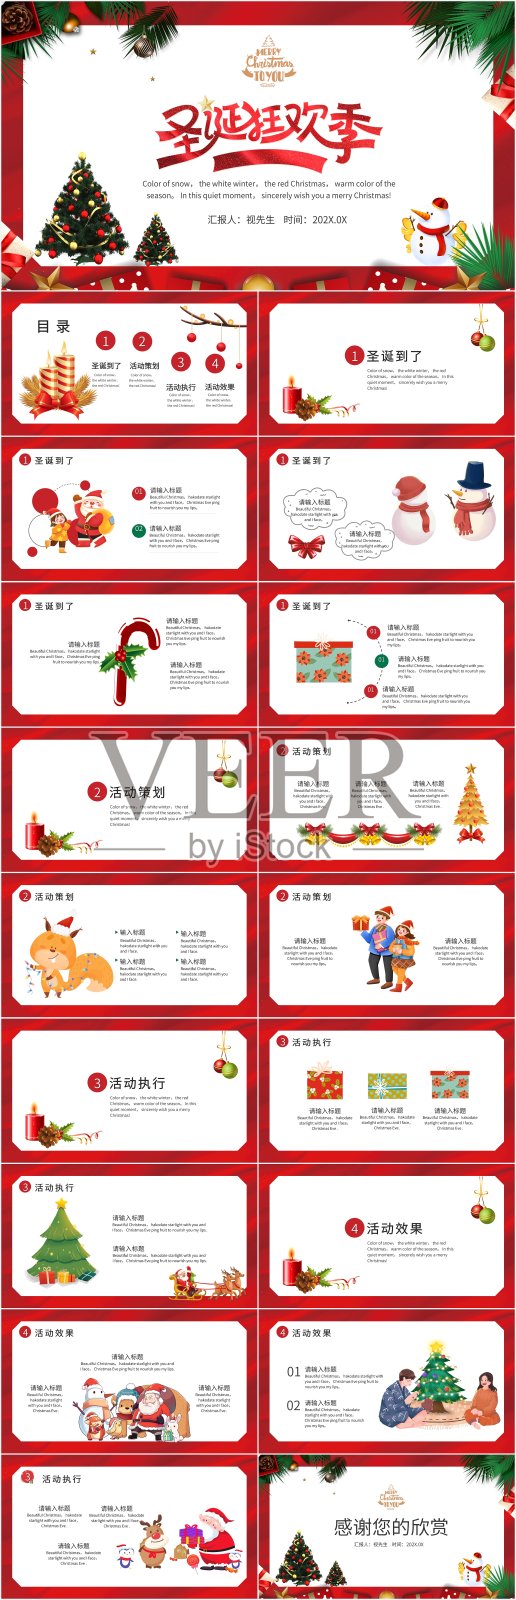 红色卡通风圣诞狂欢季PPT模板设计模板素材